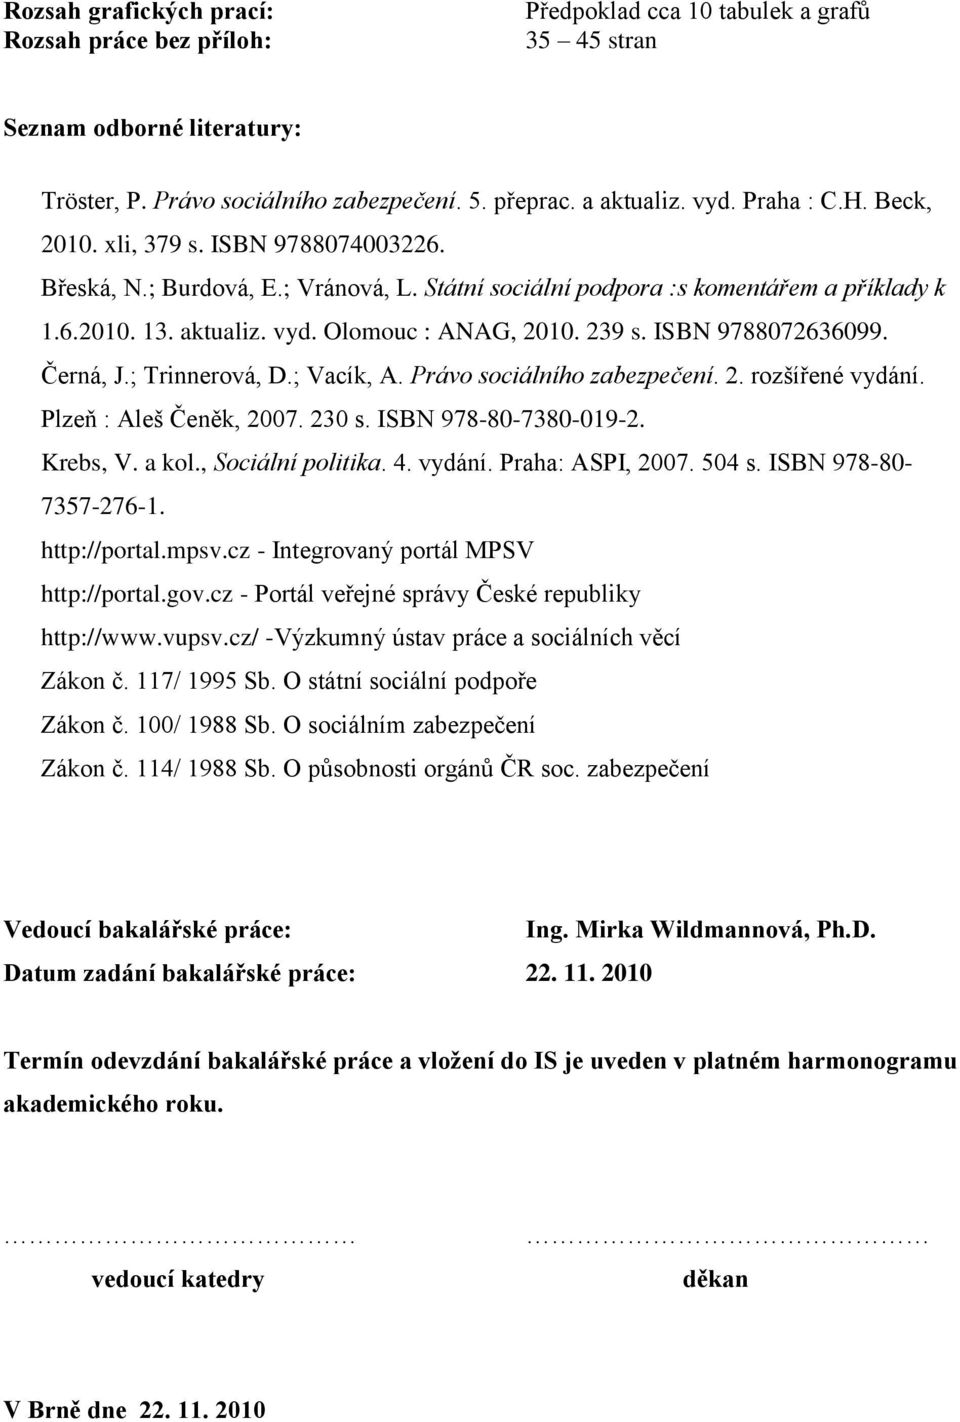 239 s. ISBN 9788072636099. Černá, J.; Trinnerová, D.; Vacík, A. Právo sociálního zabezpečení. 2. rozšířené vydání. Plzeň : Aleš Čeněk, 2007. 230 s. ISBN 978-80-7380-019-2. Krebs, V. a kol.